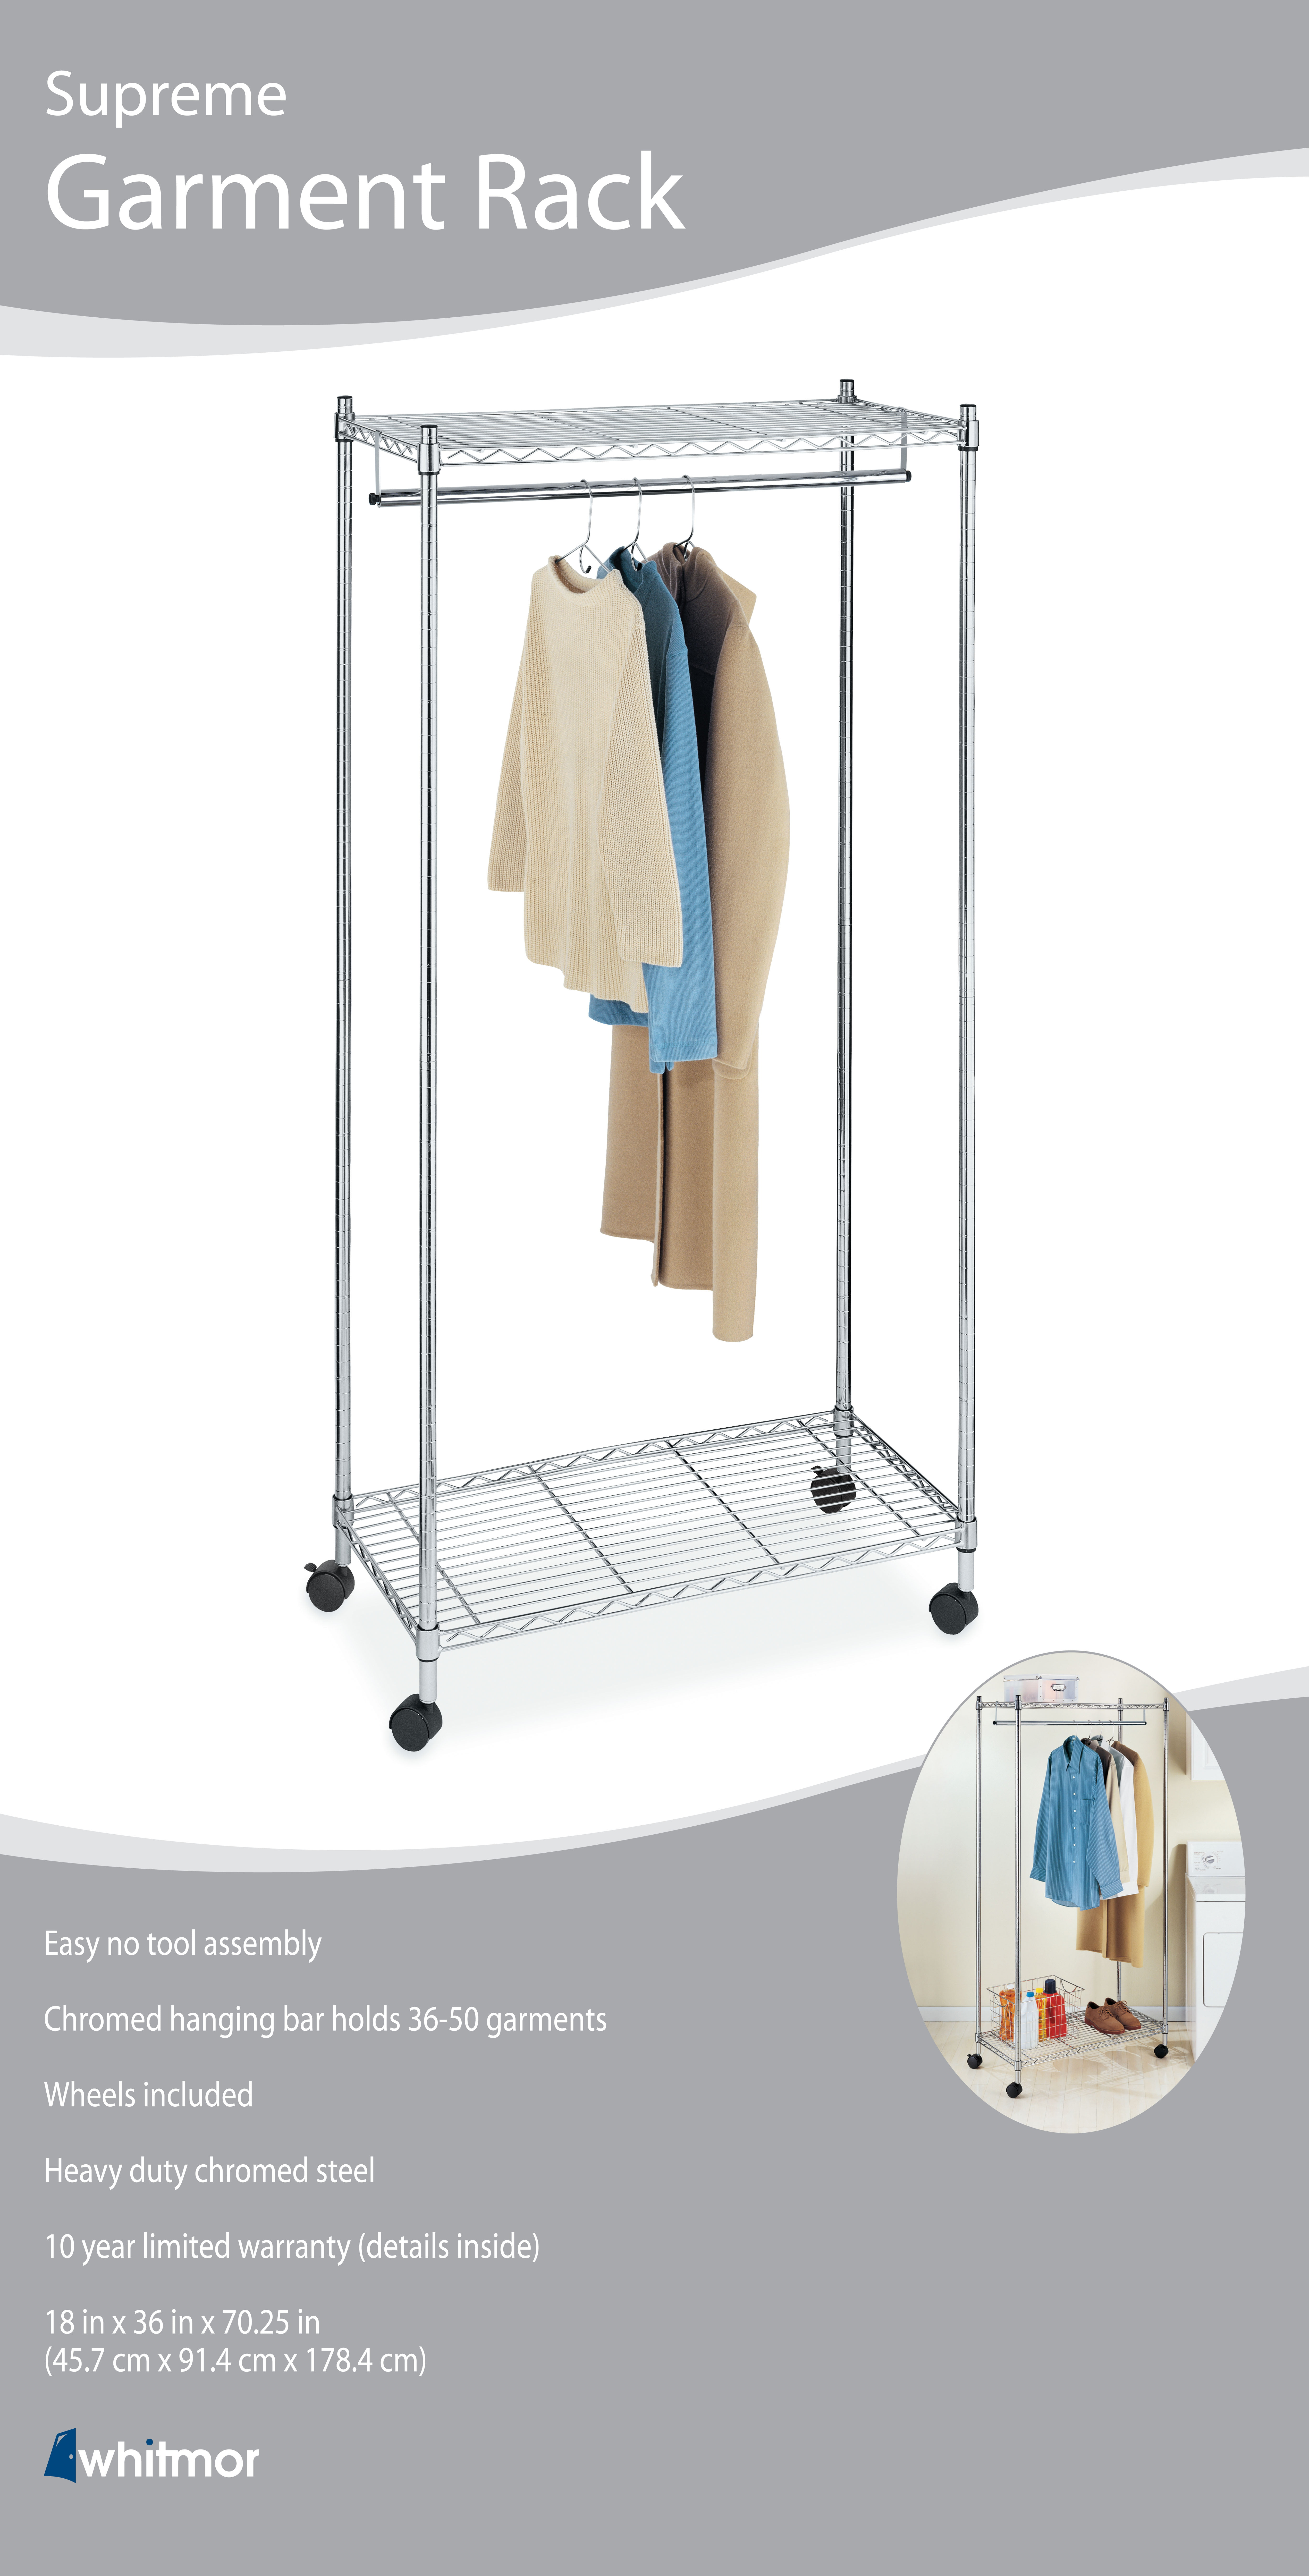 Whitmor Supreme Garment Rack Flash, Whitmor Rolling Garment Rack With Shelves